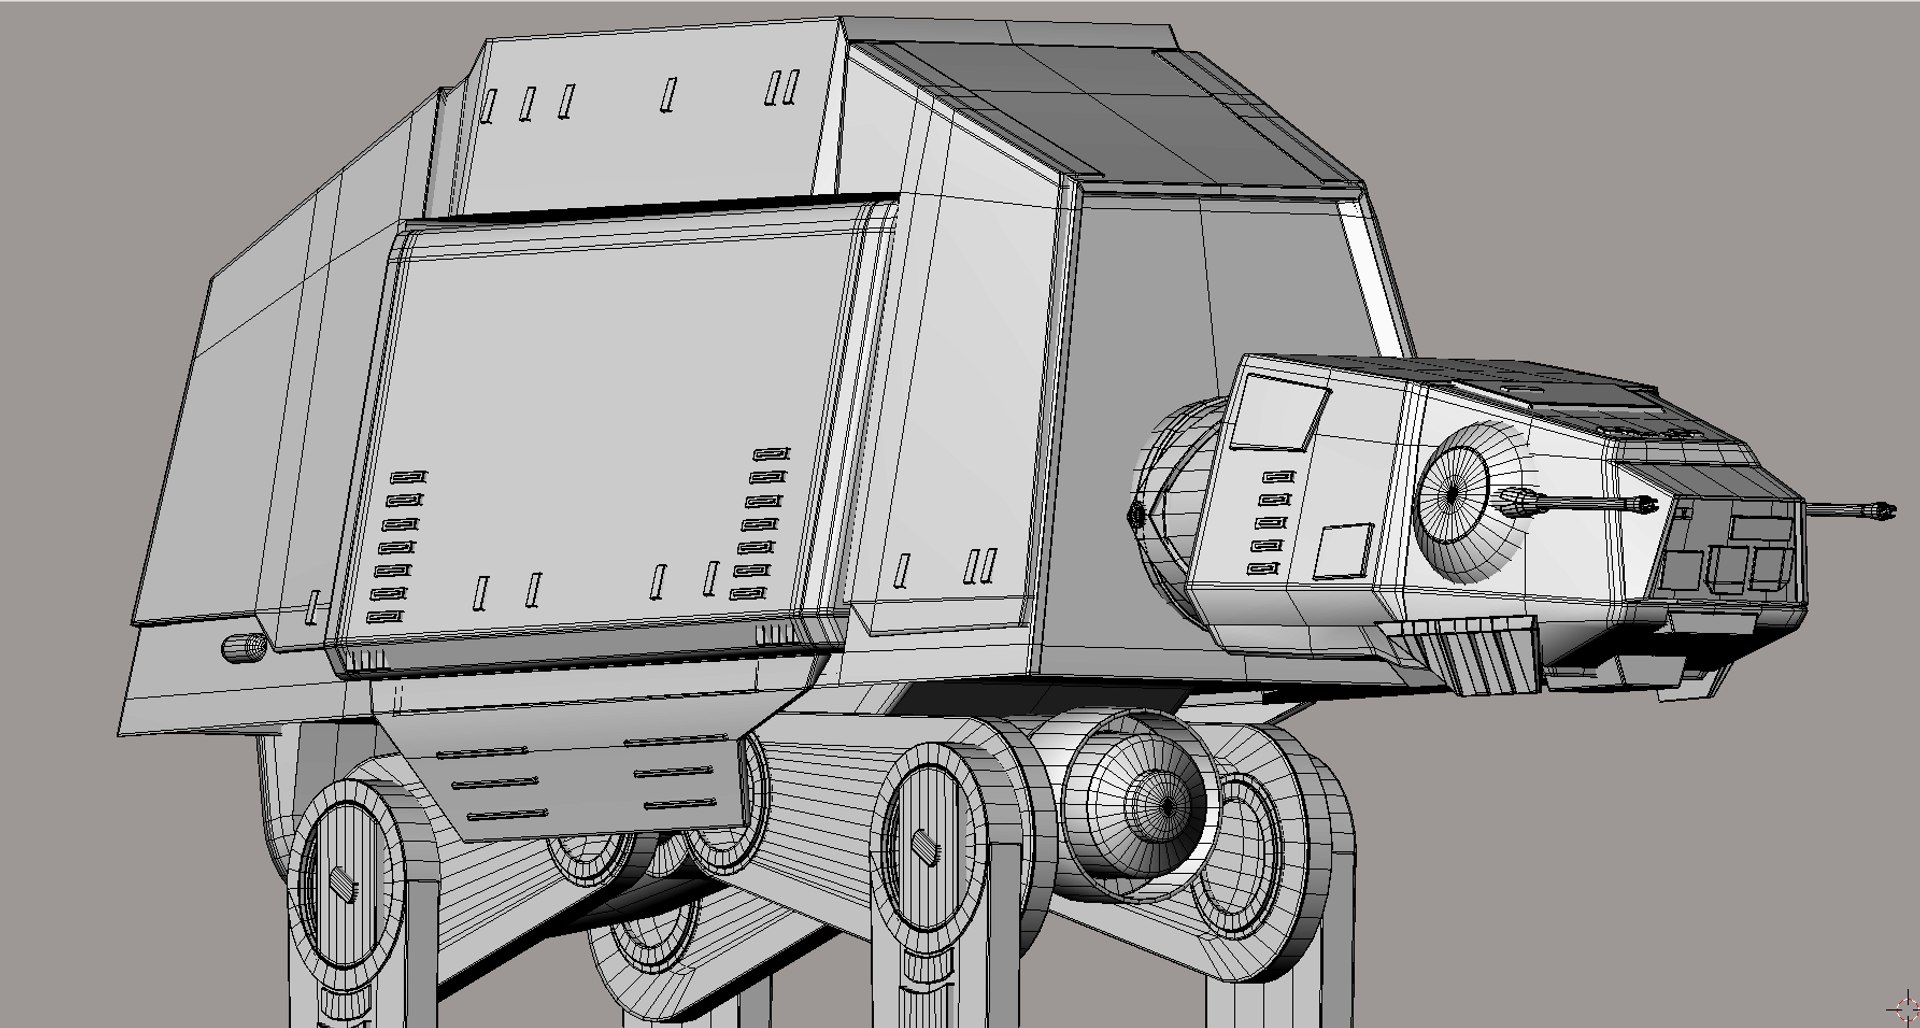 Star Wars AT-ST für Maya manipuliert 3D-Modell - TurboSquid 991268